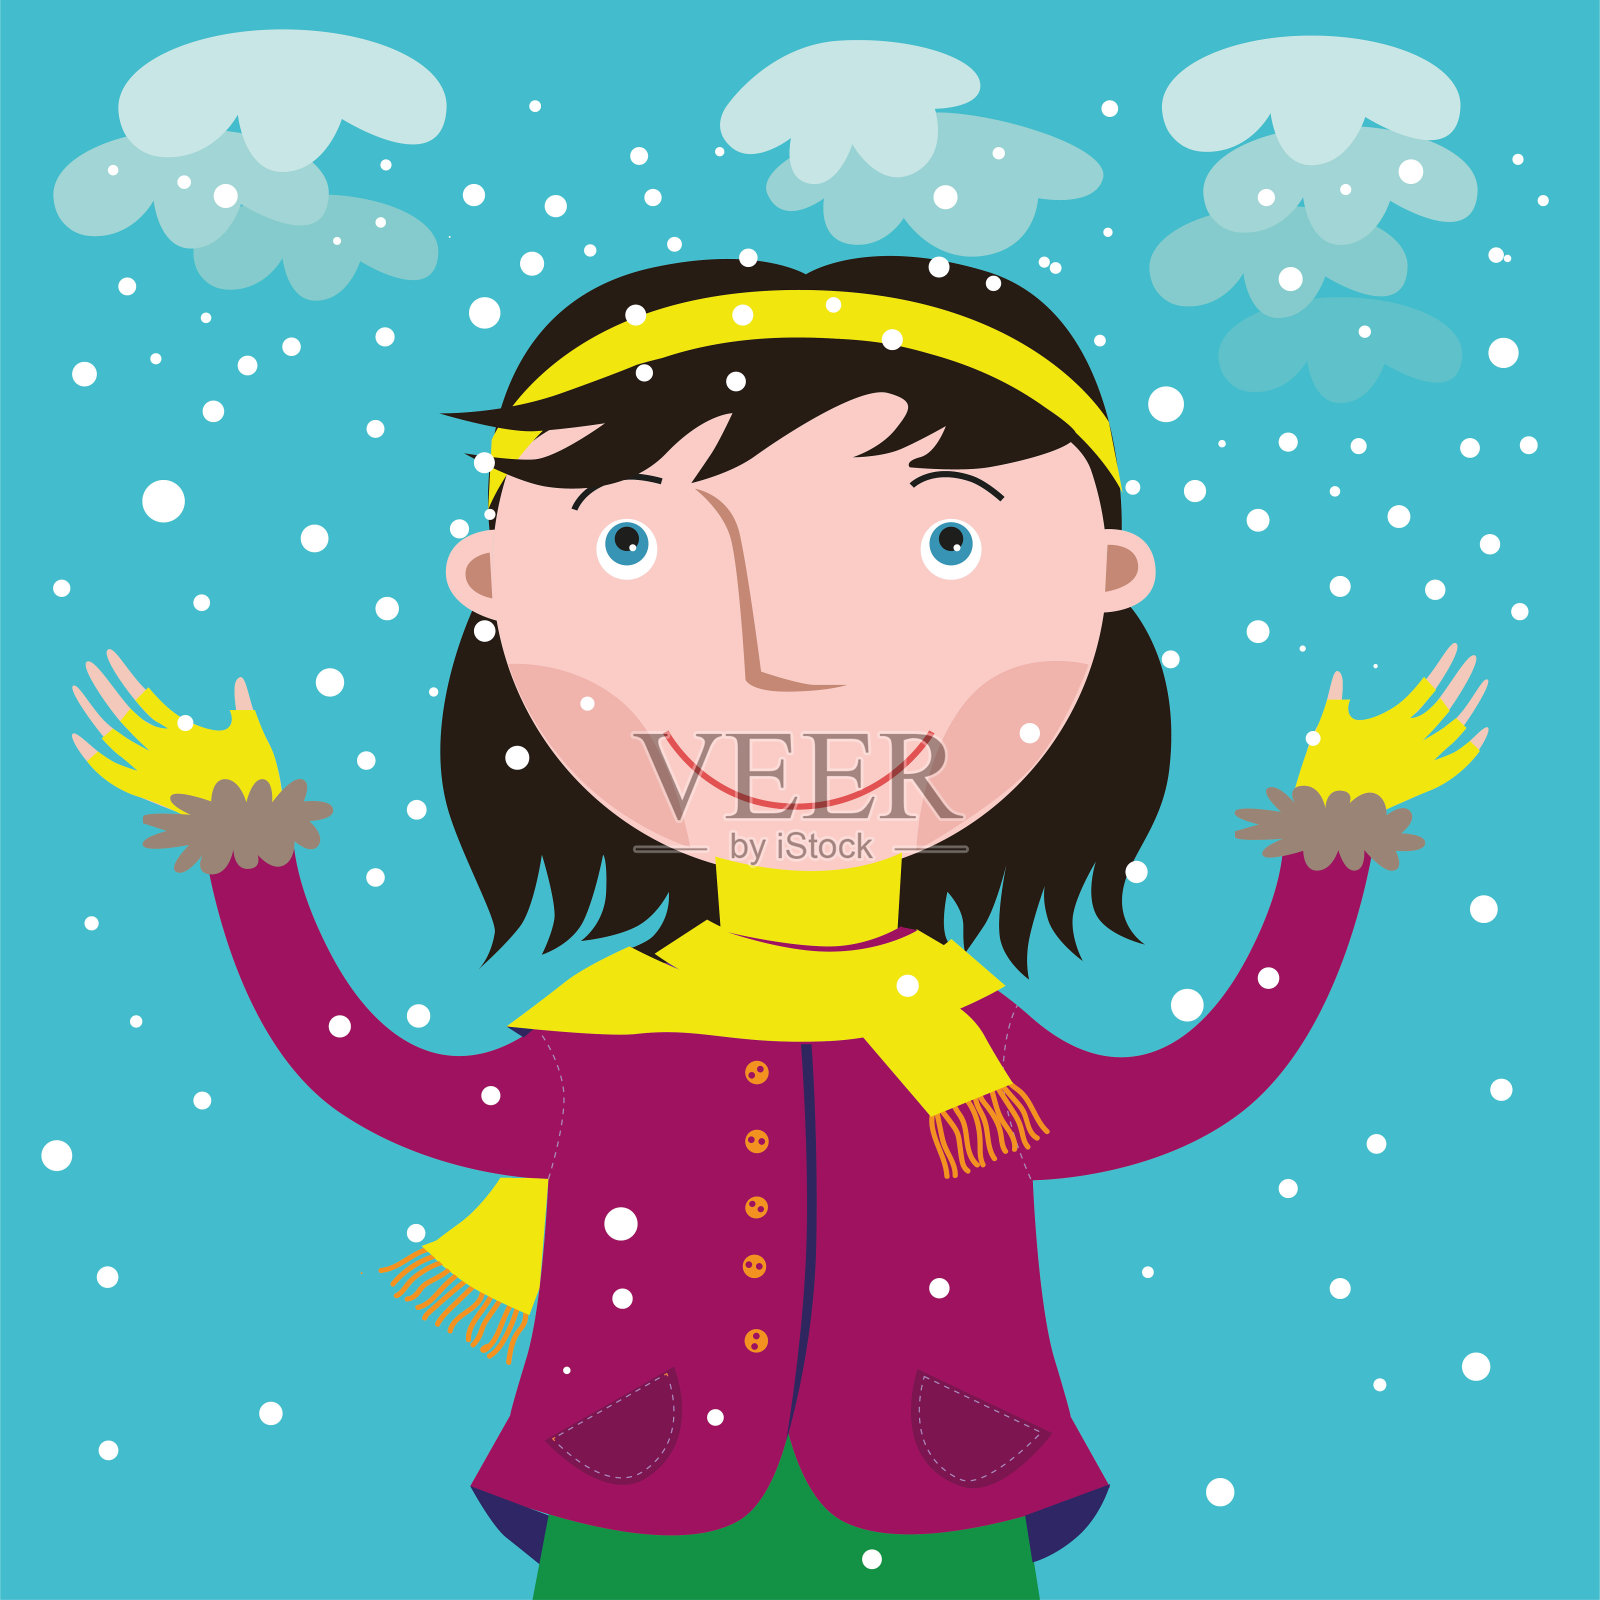 第一场雪落下时，一个女孩微笑着抬起头来设计元素图片